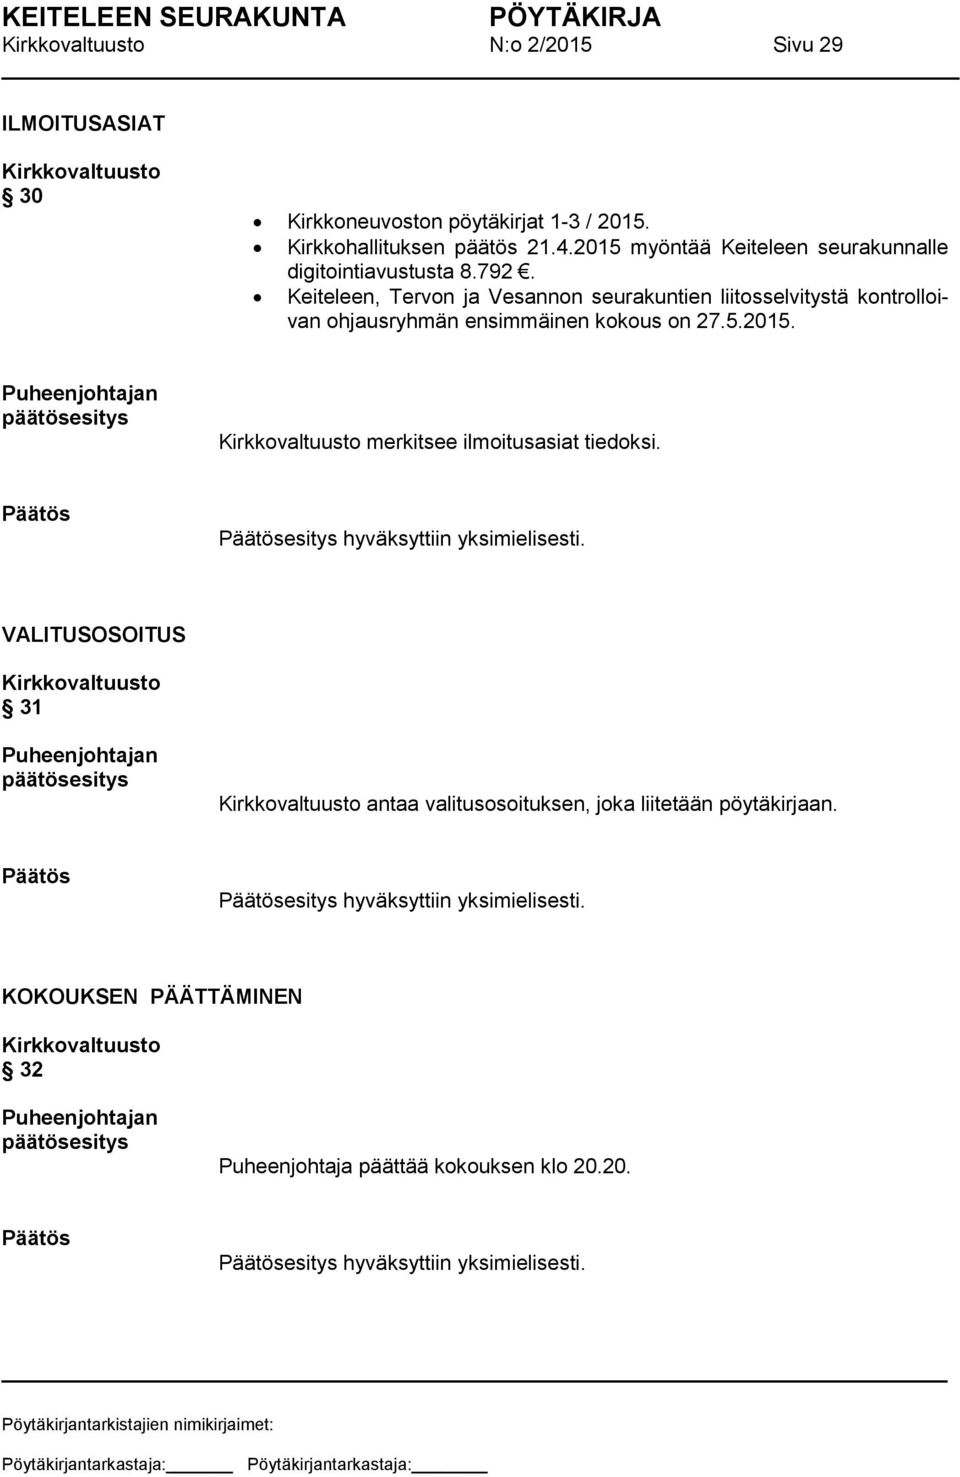 Keiteleen, Tervon ja Vesannon seurakuntien liitosselvitystä kontrolloivan ohjausryhmän ensimmäinen kokous on 27.5.2015.